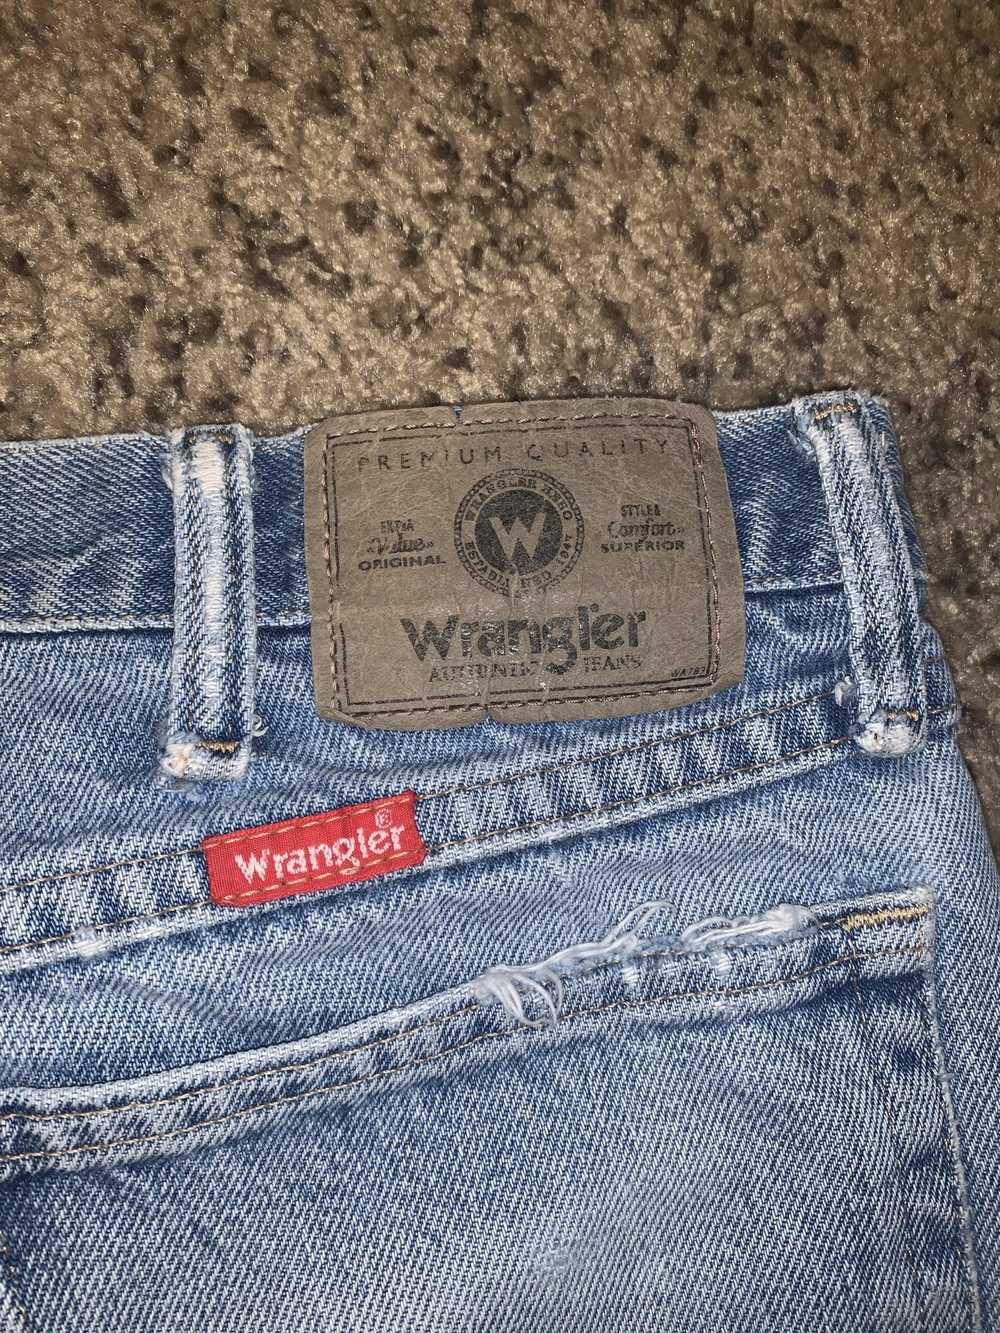 Vintage × Wrangler Vintage Wrangler jeans - image 5